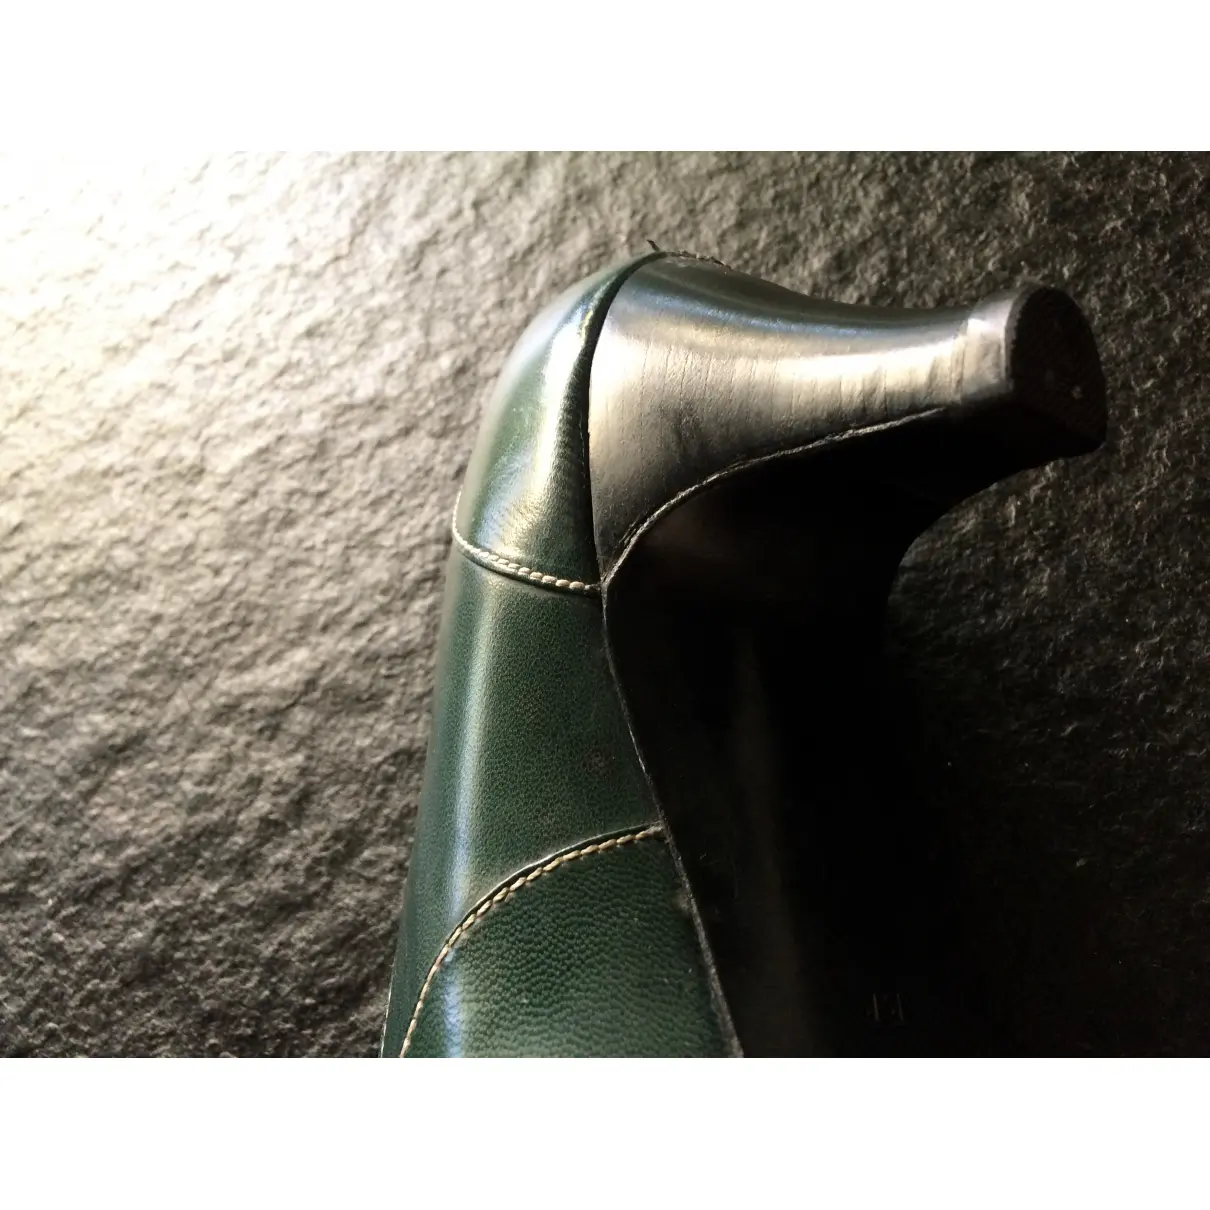 Leather heels Hermès